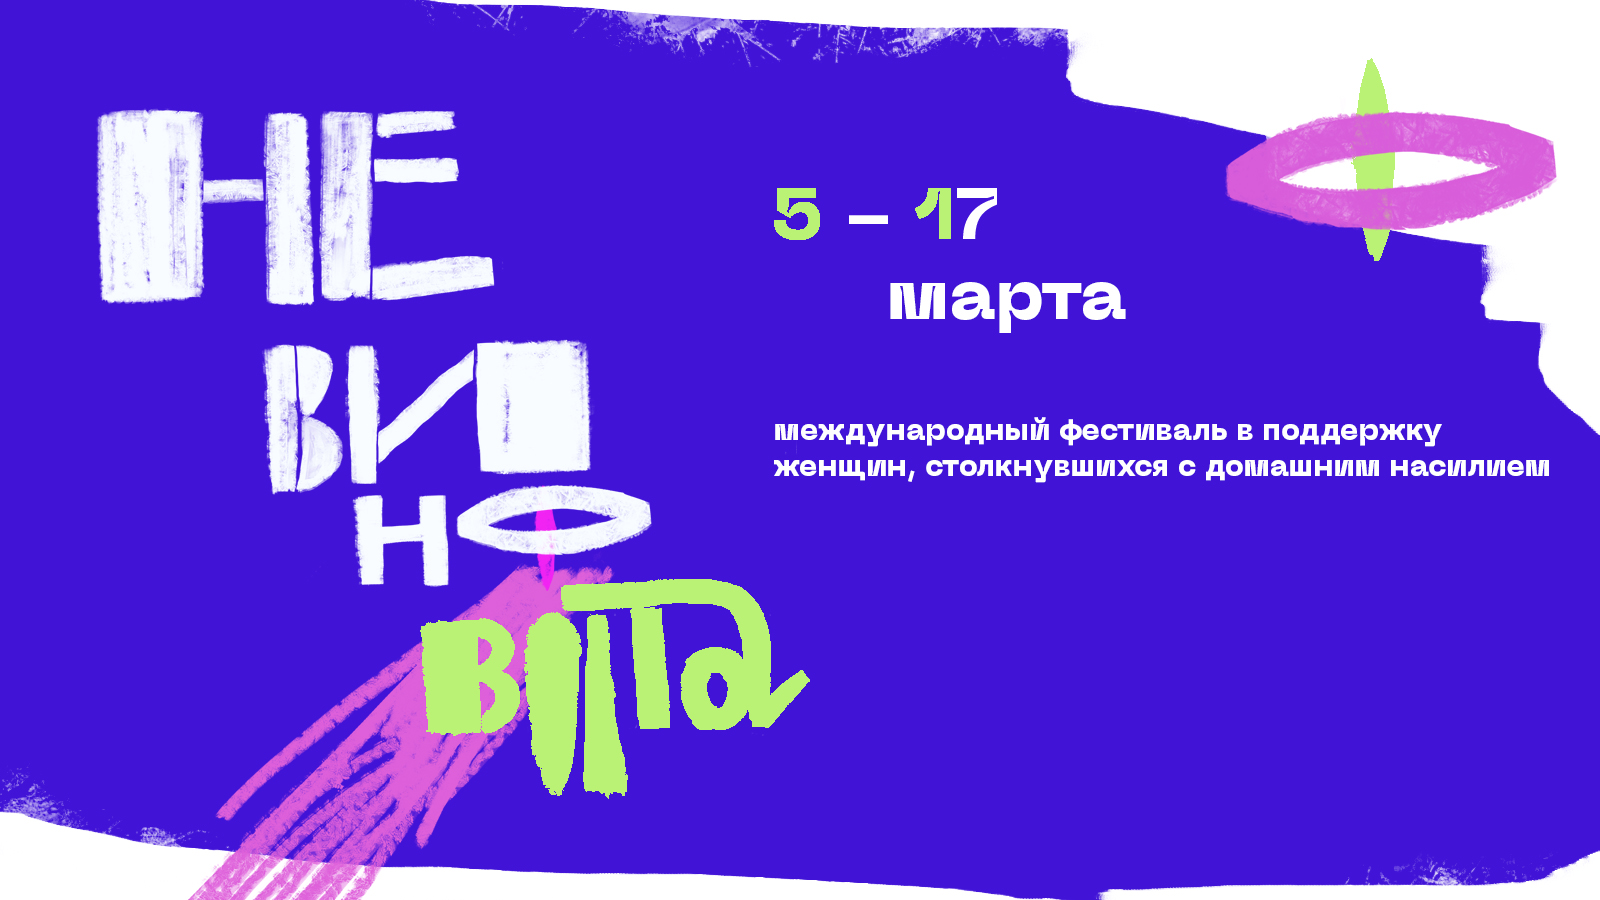 В Ташкенте пройдет фестиваль в поддержку женщин, столкнувшихся с домашним насилием 